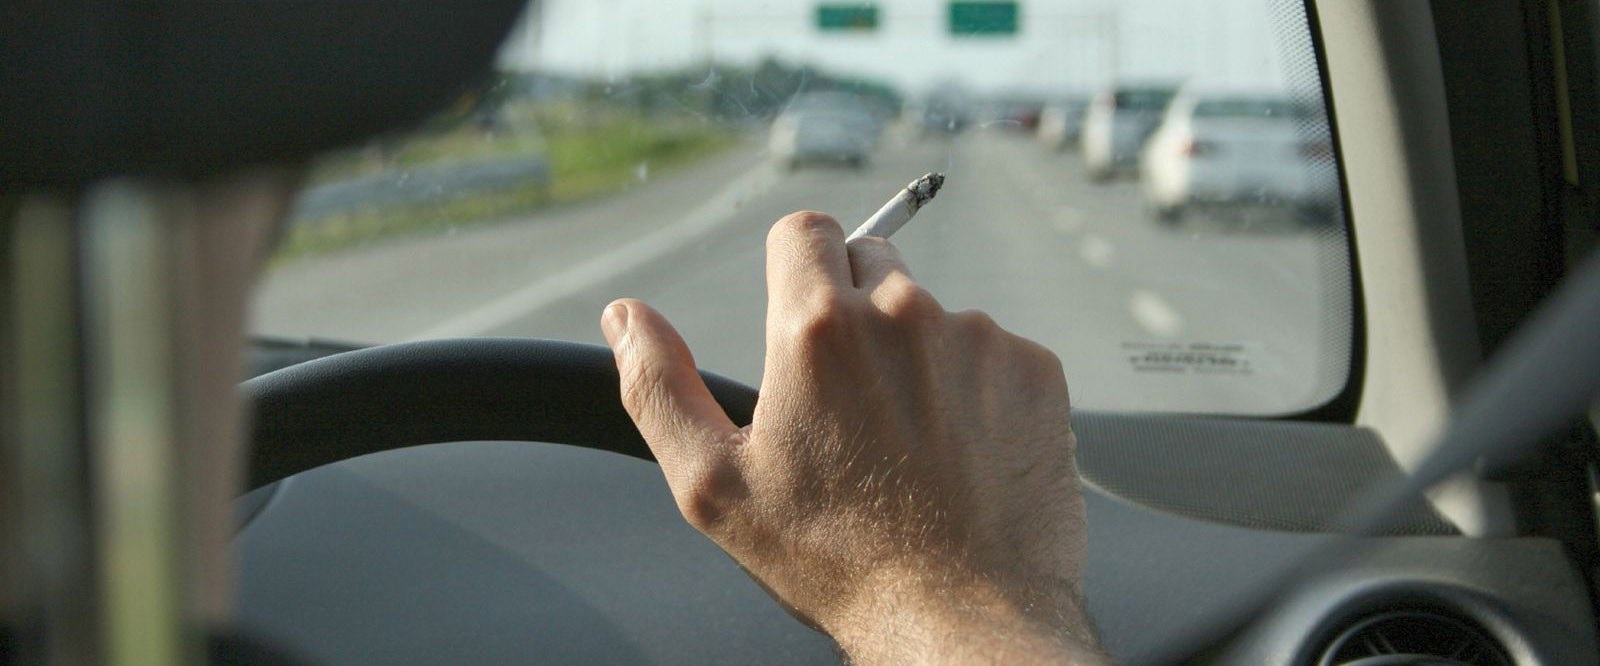 ΚΥΠΡΟΣ: «Καπνίστε μόνο στο σπίτι σας» - Απαγορεύεται και στο αυτοκίνητο όταν επιβαίνουν άτομα κάτω των 16 – Έξι... αποπνικτικές απαγορεύσεις